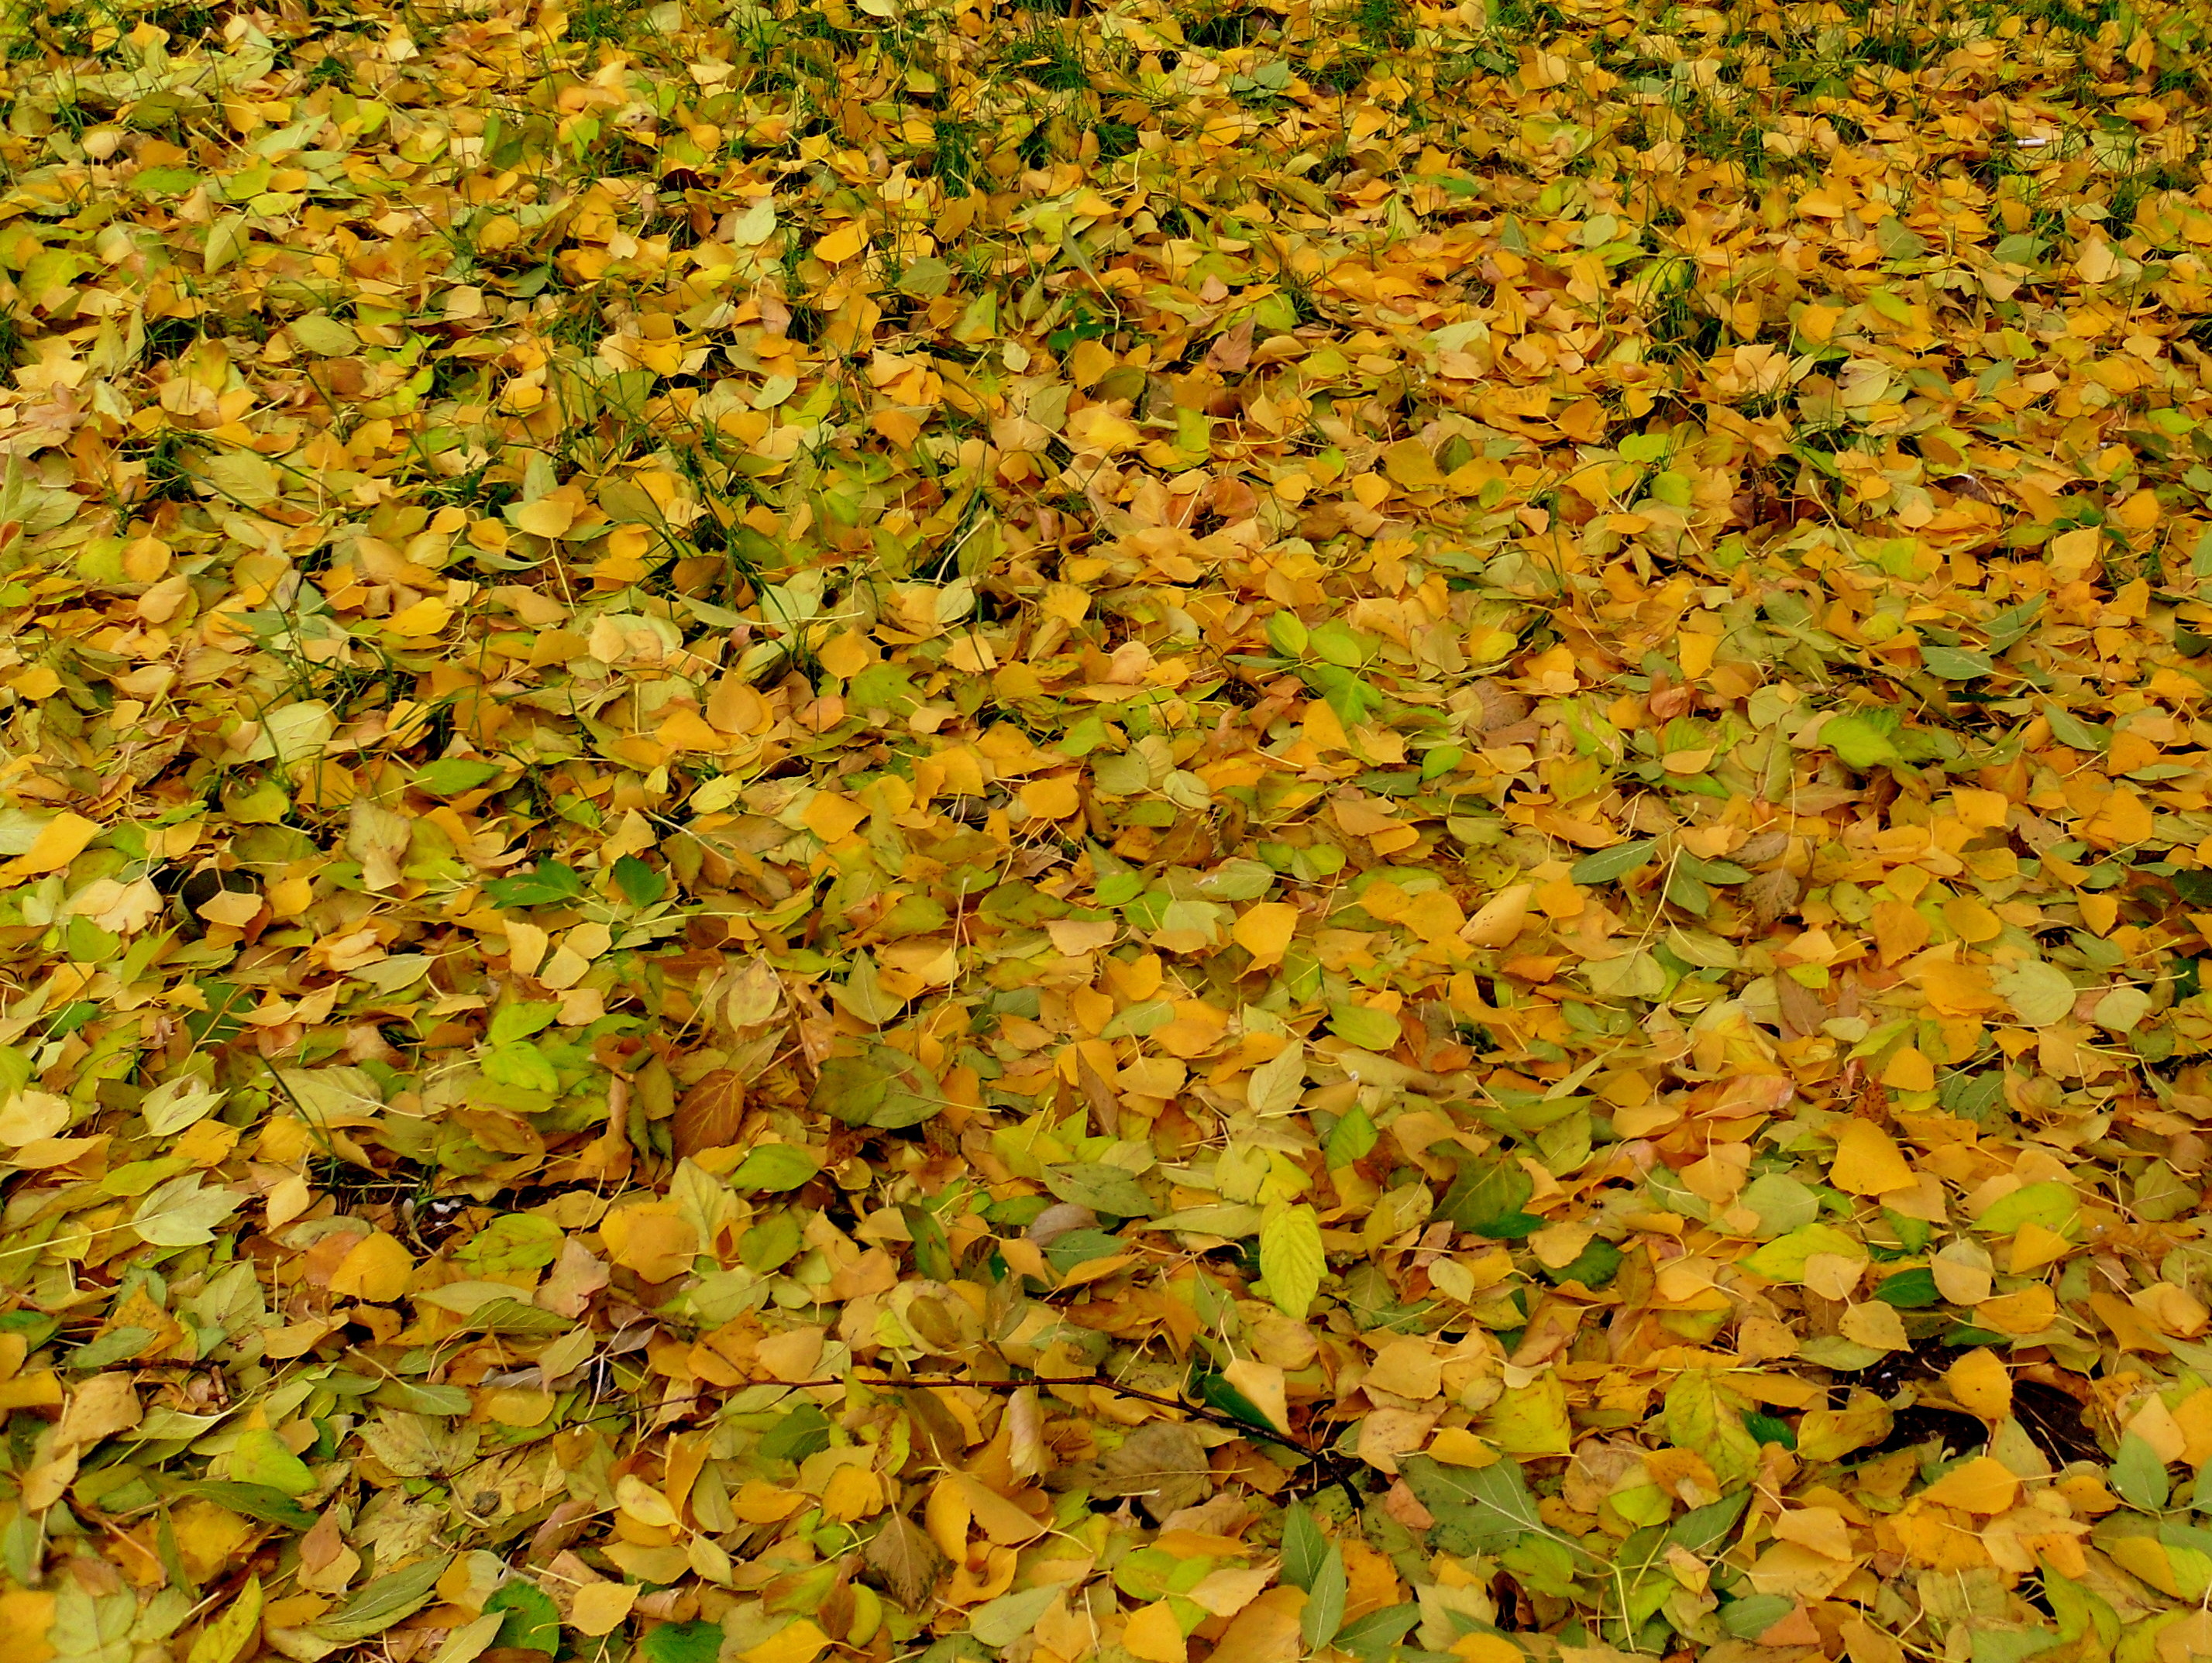 описание фотографии осенние листья гиппенрейтера